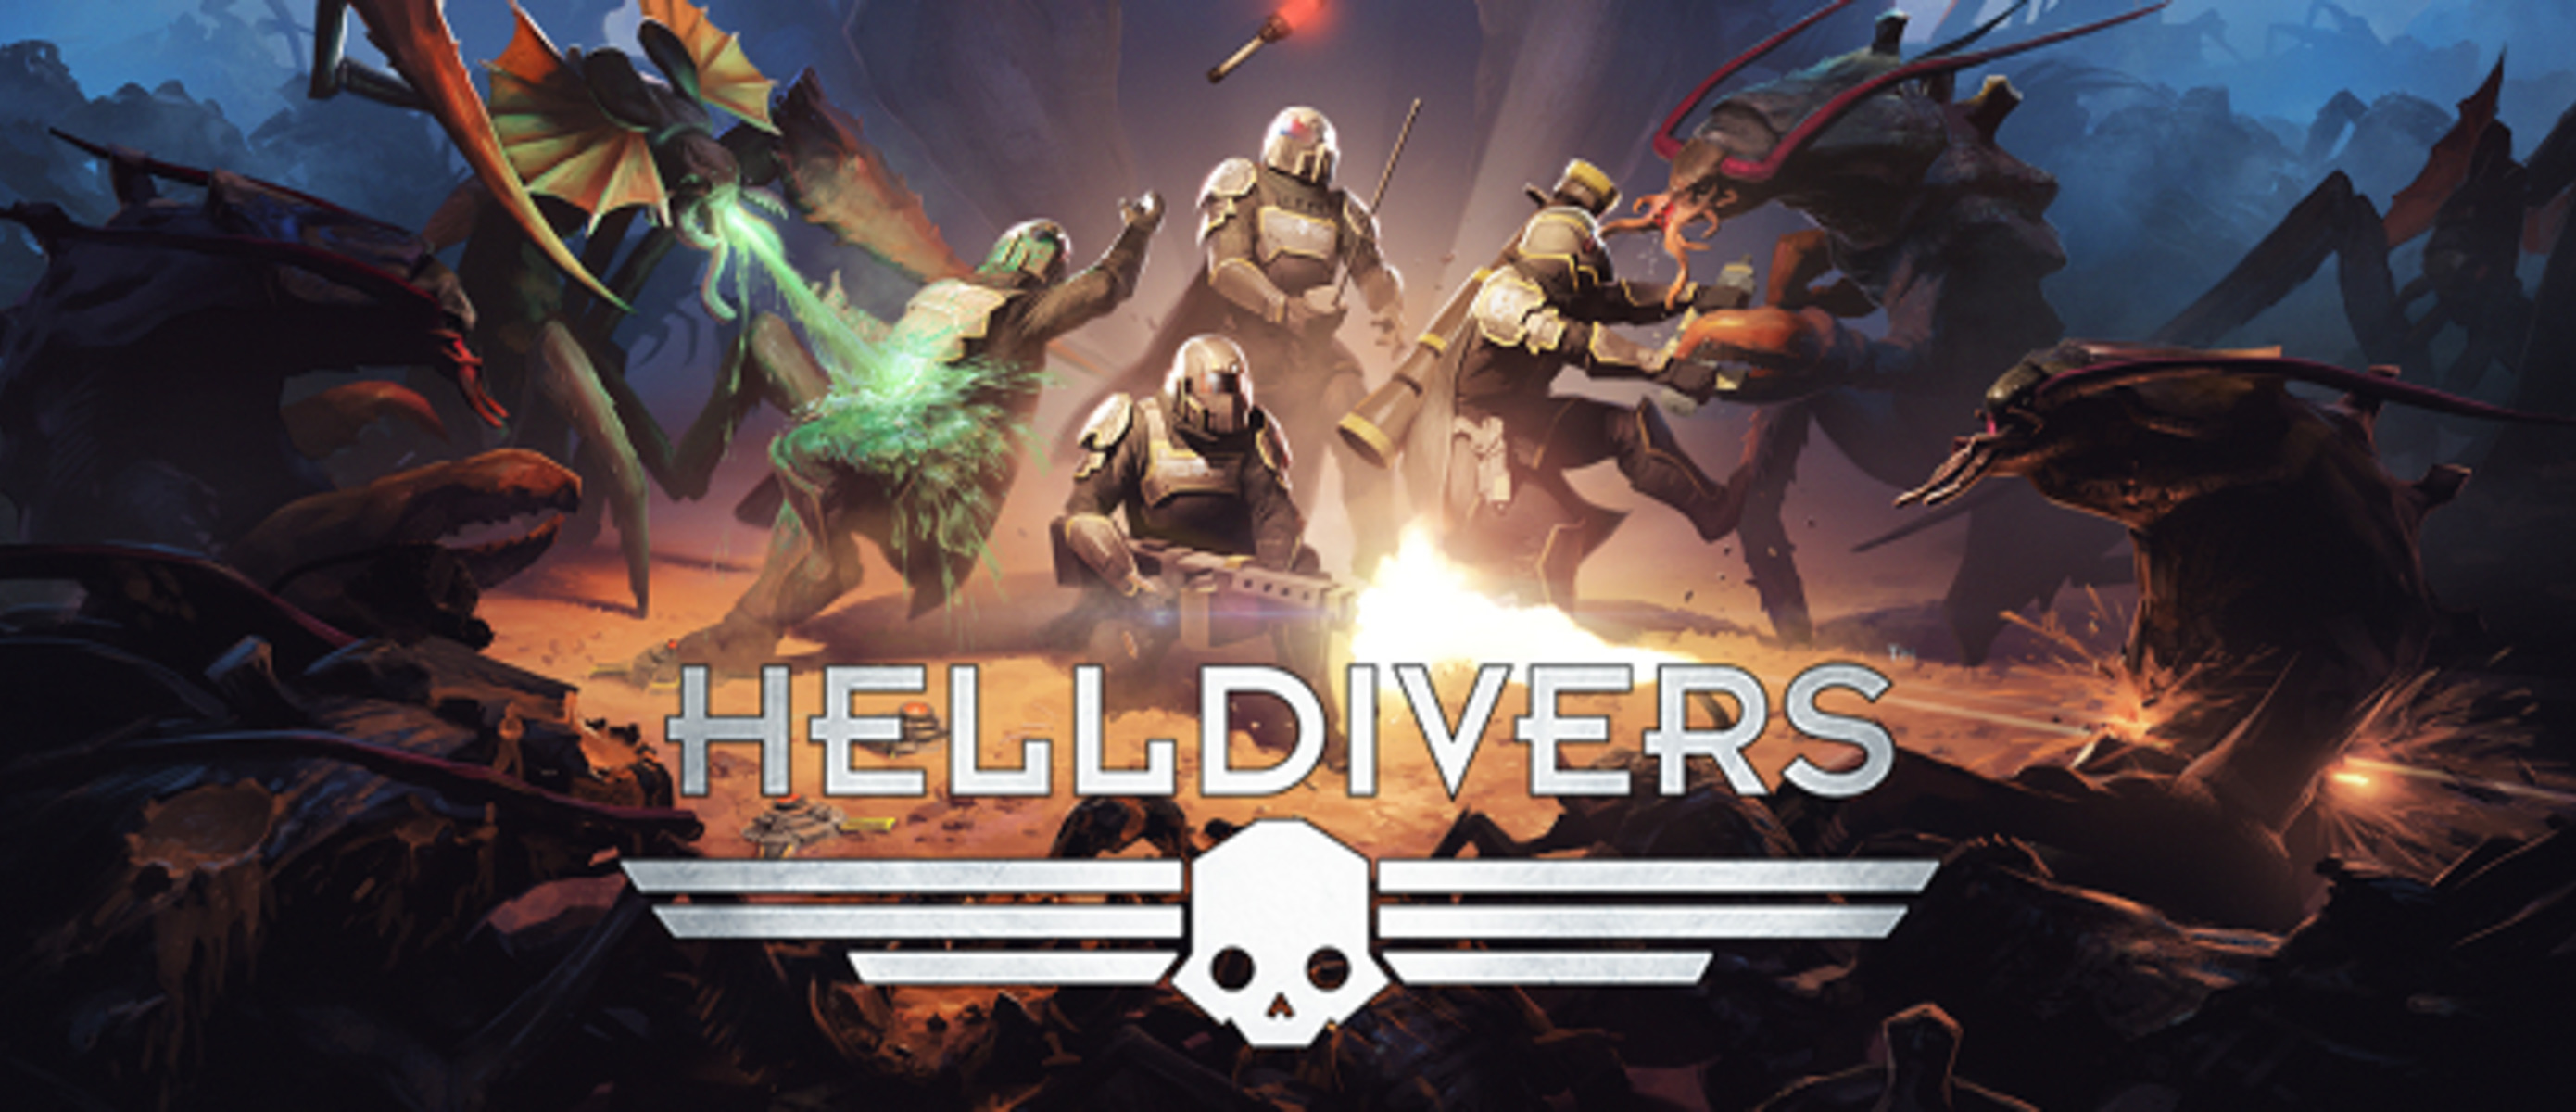 Игры похожие на helldivers. Helldivers 2. Helldivers враги. Helldivers расы. Helldivers 1 расы.